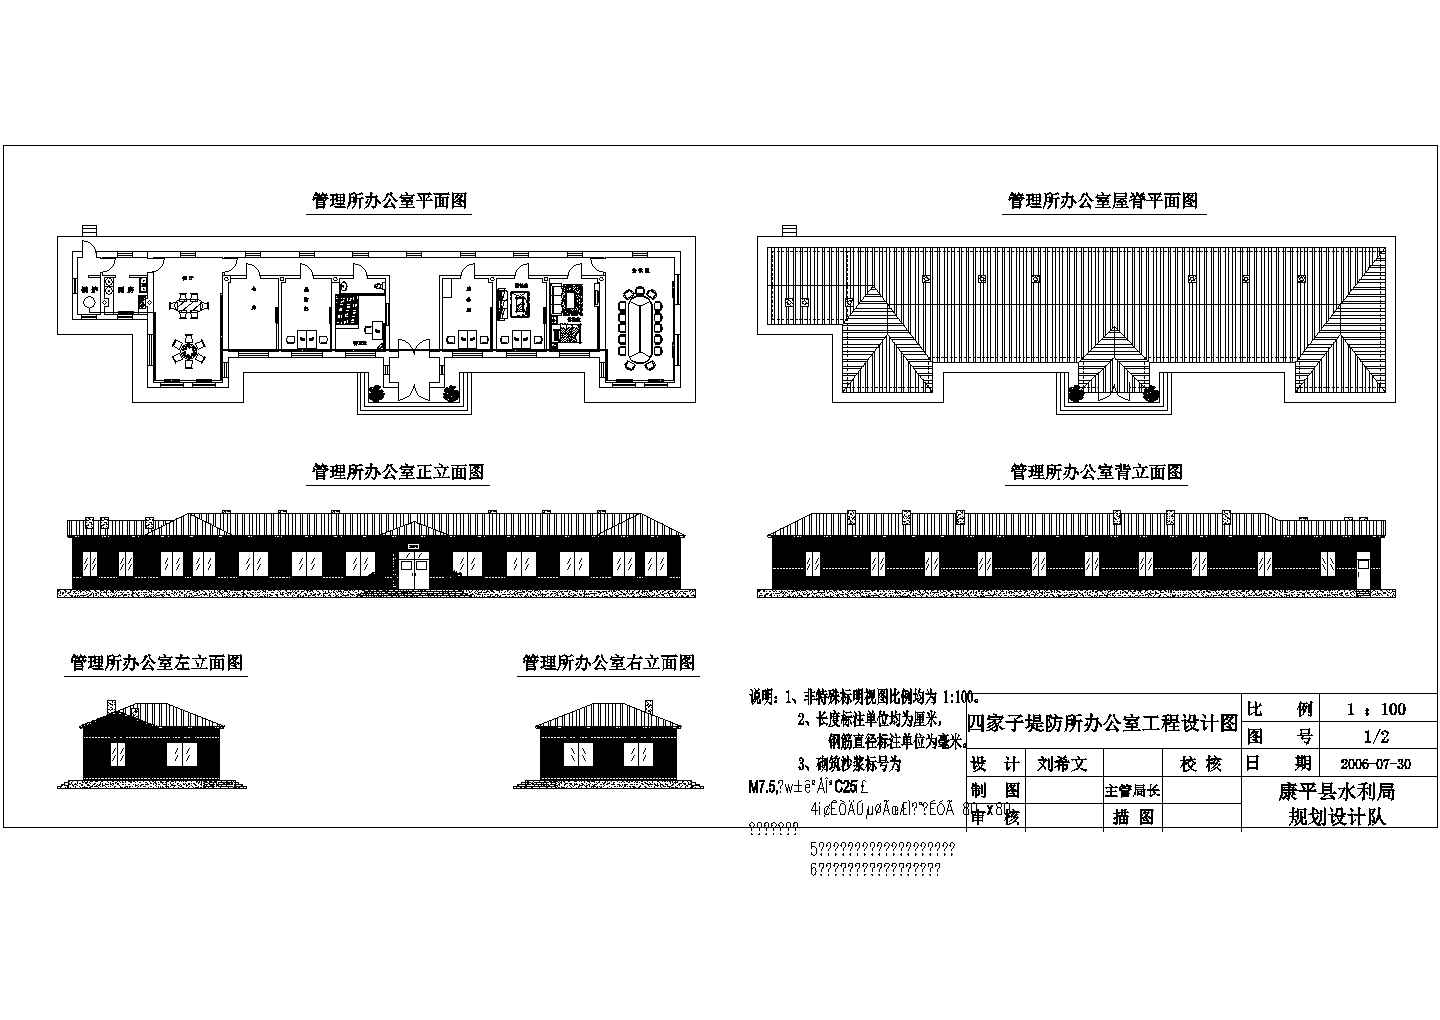 四家子堤防管理所办公房工程设计图